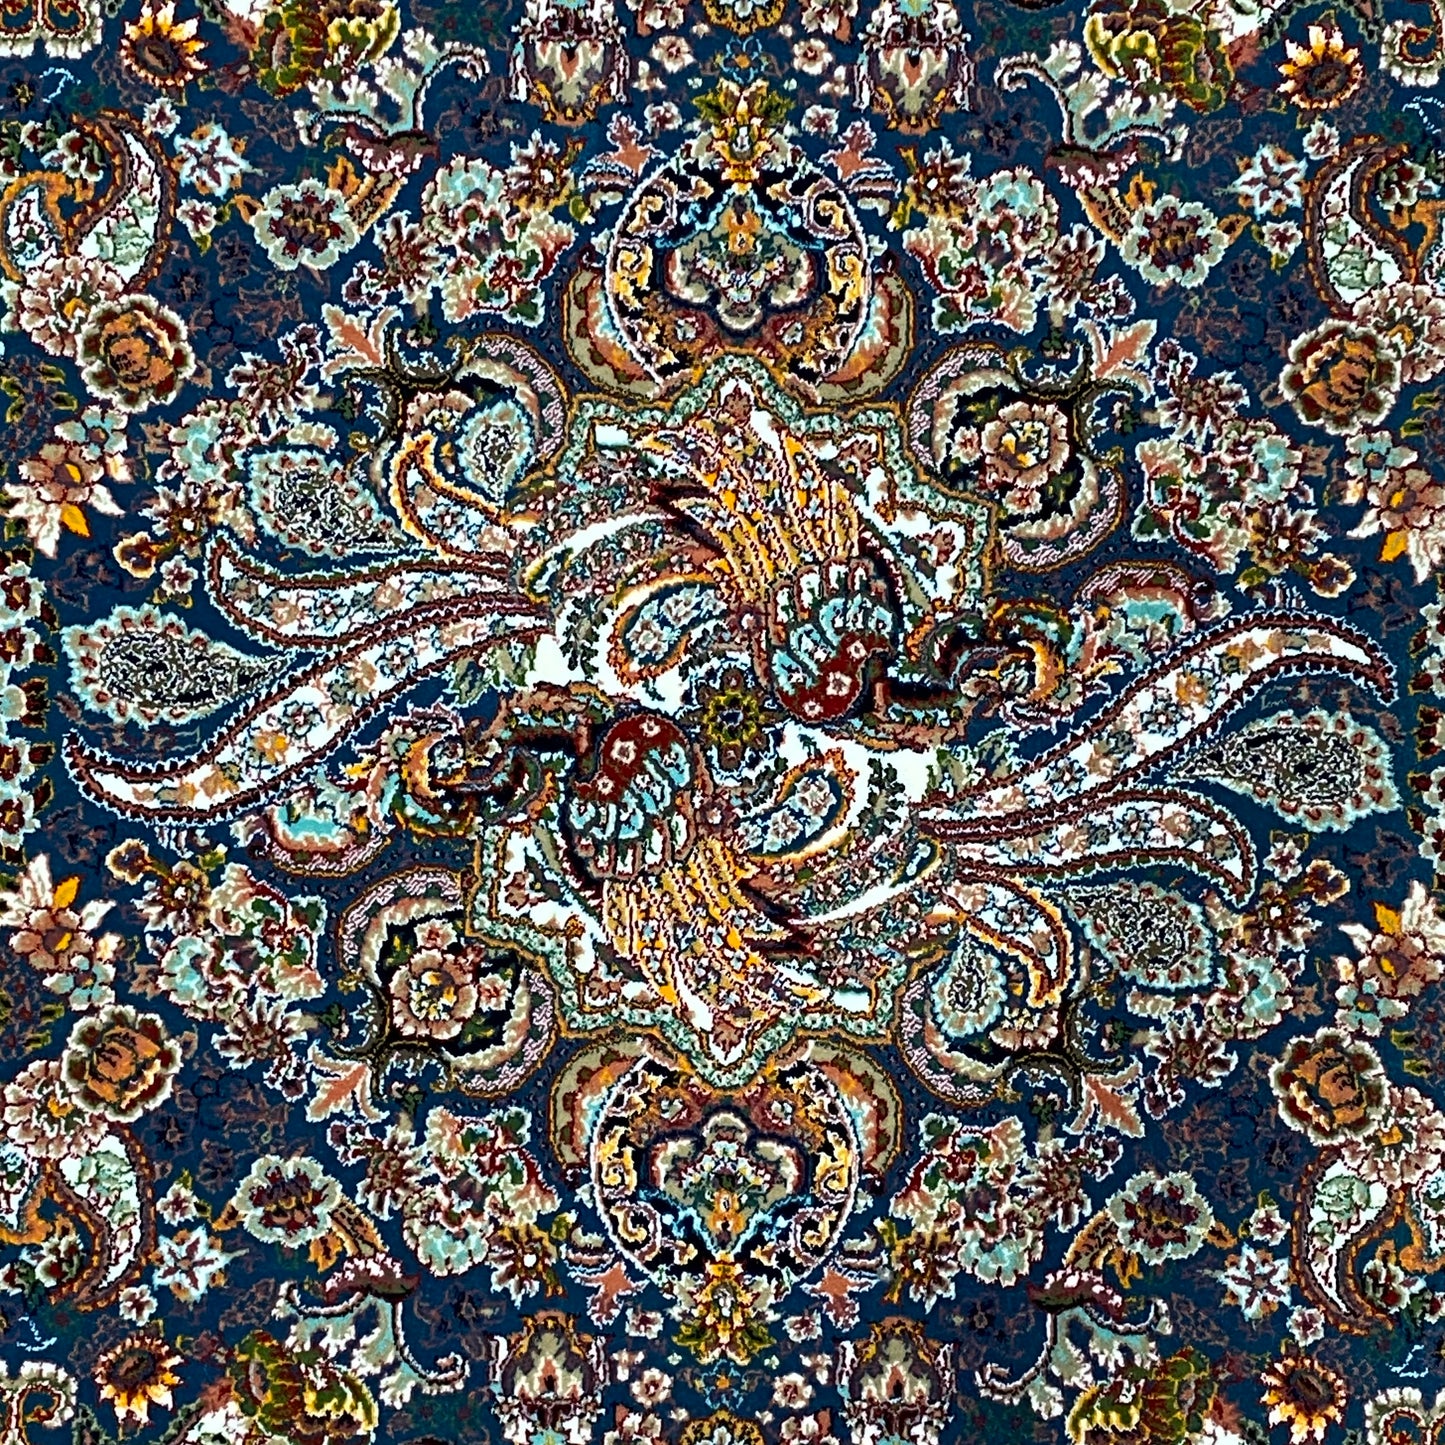 3 ft x 13 ft - Runner - Persian 1000 Reeds - Shahkar 8 - Tortoise and Multi Colors